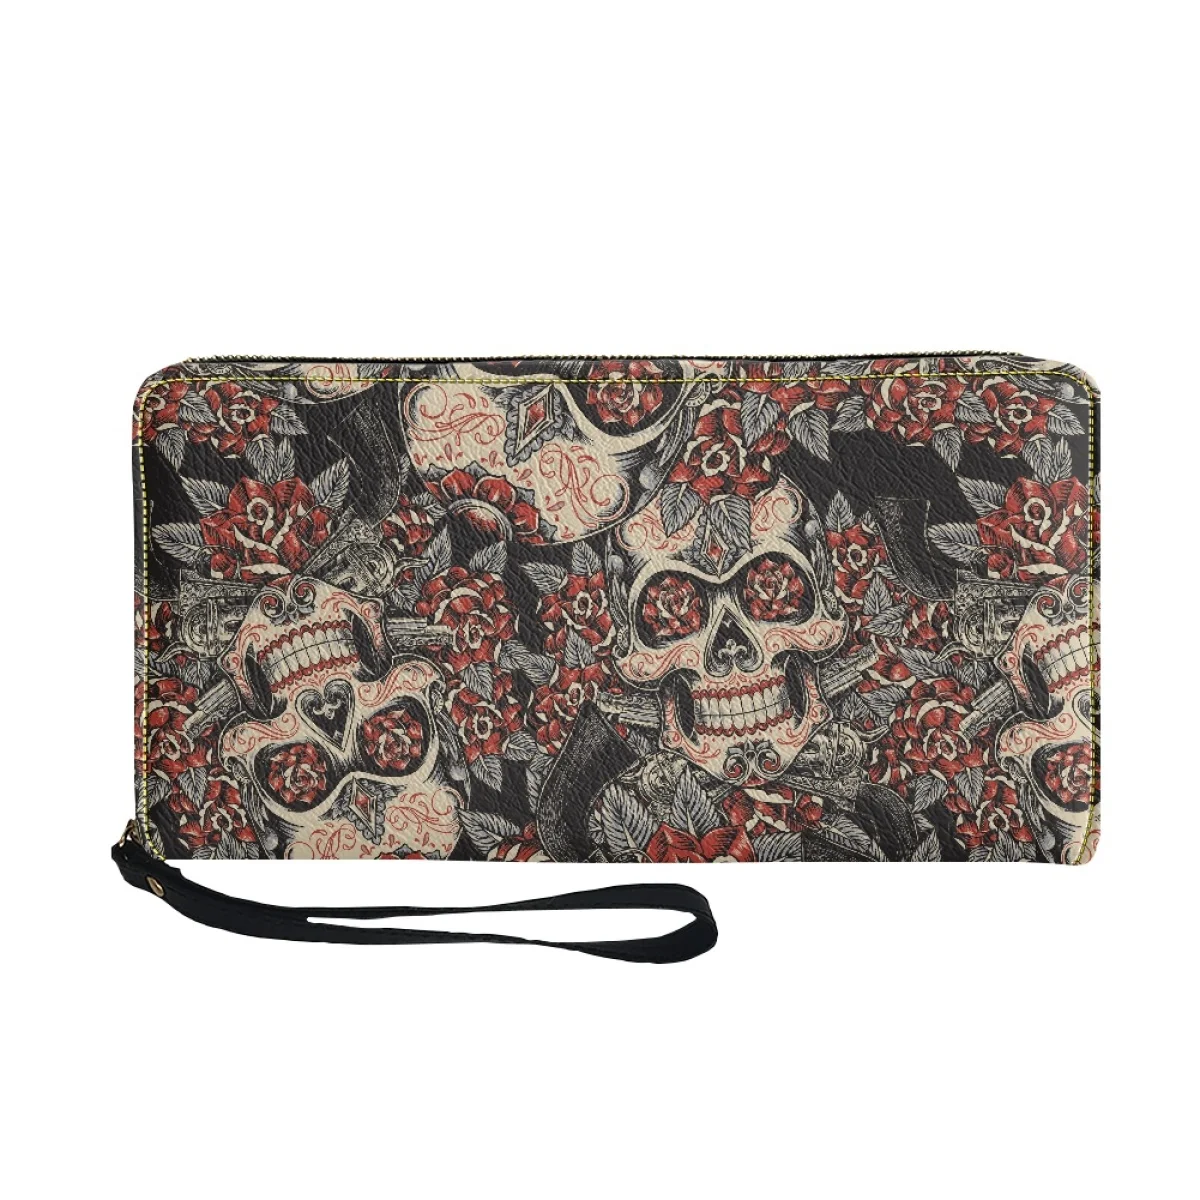 Woman Luxury Brand Wallet Pu Leather Skull Flower Pattern Wallet Minimalist Wallets With Strap Carteras De Mujer